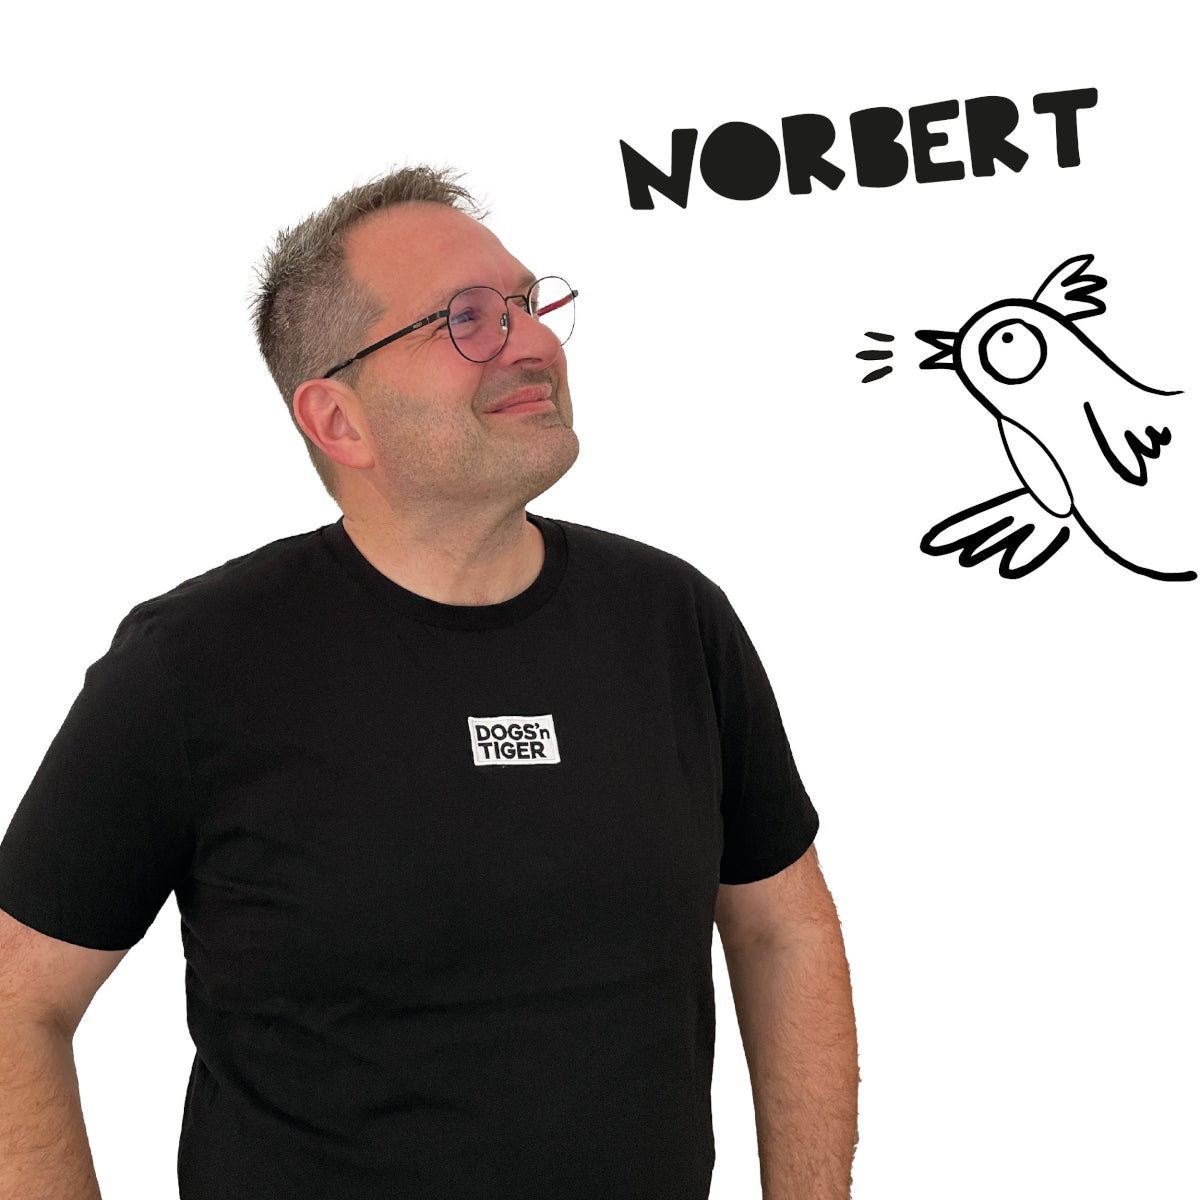 Foto von Norbert in schwarzem Shirt mit Dogs'n Tiger Logo